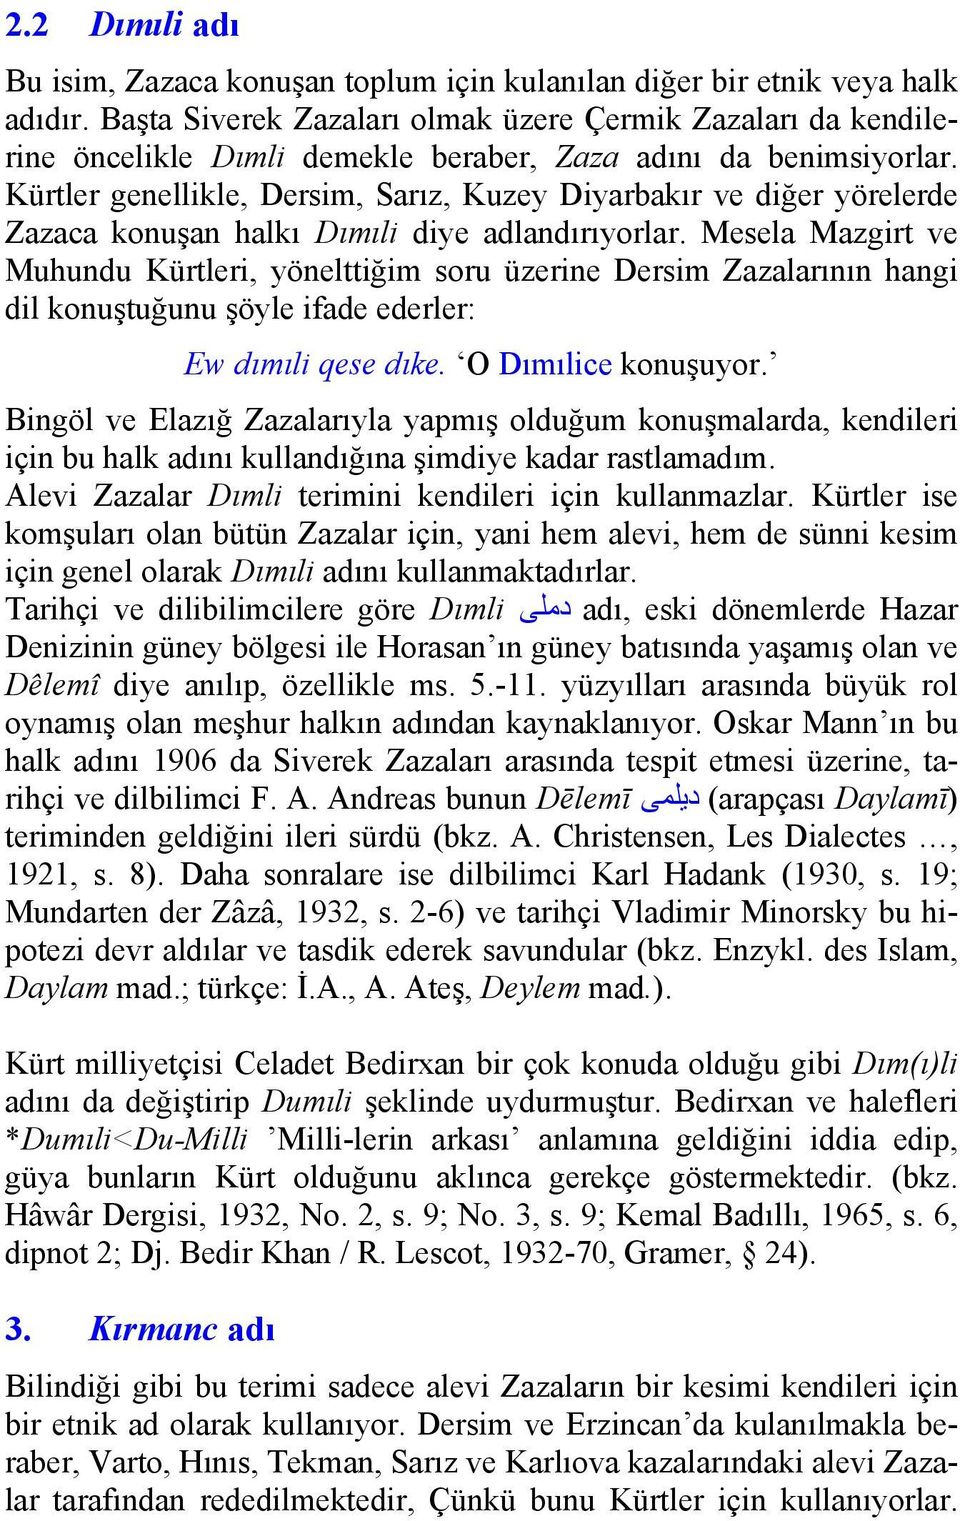 Kürtler genellikle, Dersim, Sarız, Kuzey Diyarbakır ve diğer yörelerde Zazaca konuşan halkı Dımıli diye adlandırıyorlar.